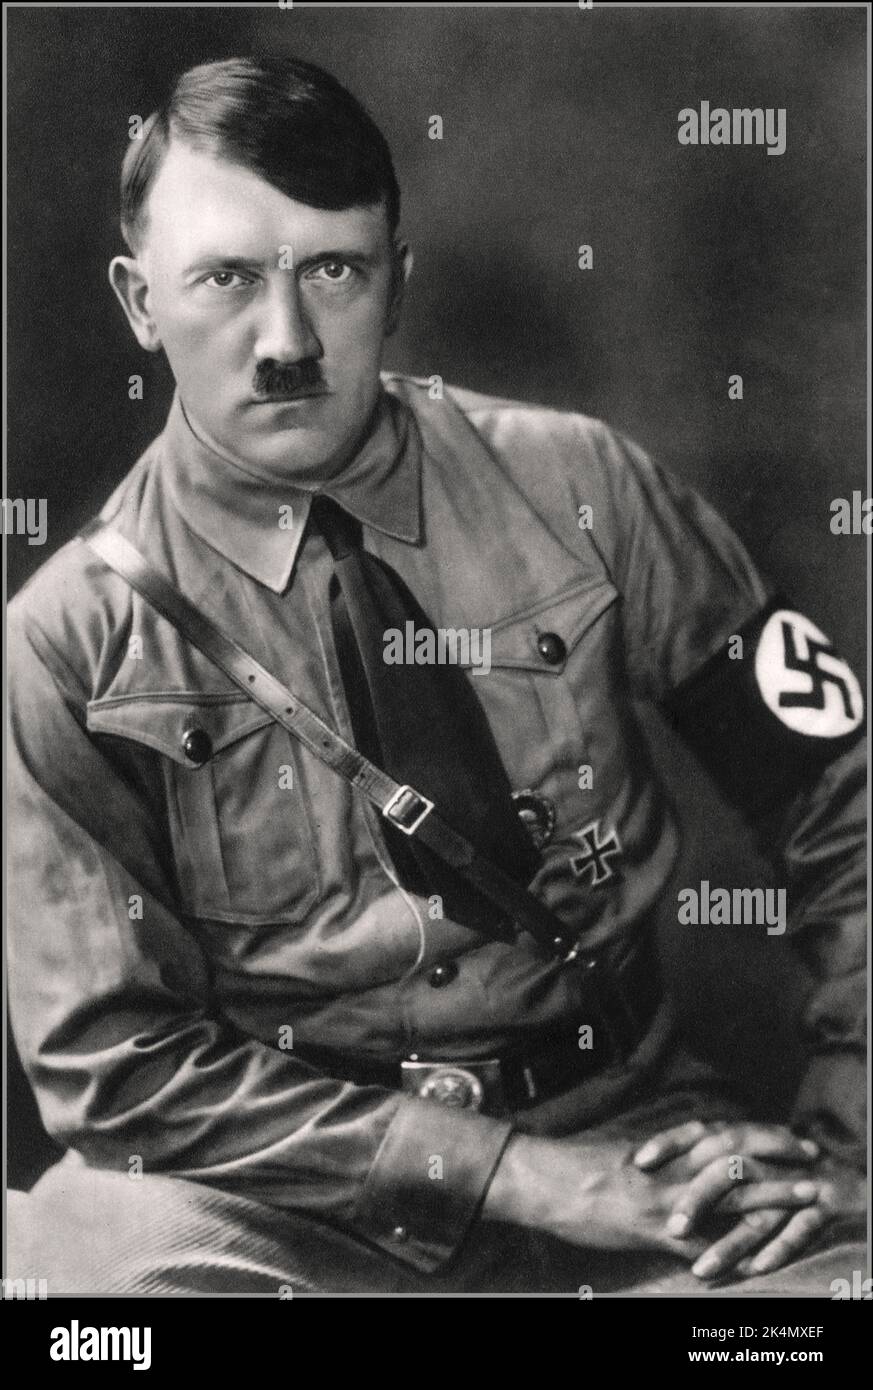 Adolf Hitler ritratto in NSDAP Sturmabteilung Nazi uniforme con banda da braccio swastika nel pre-guerra 1920 / 30 's fotografato da Hoffmann il suo preferito fotografo personale, per il suo libro Mein Kampf Nazi NSDAP Swastika Germania Foto Stock